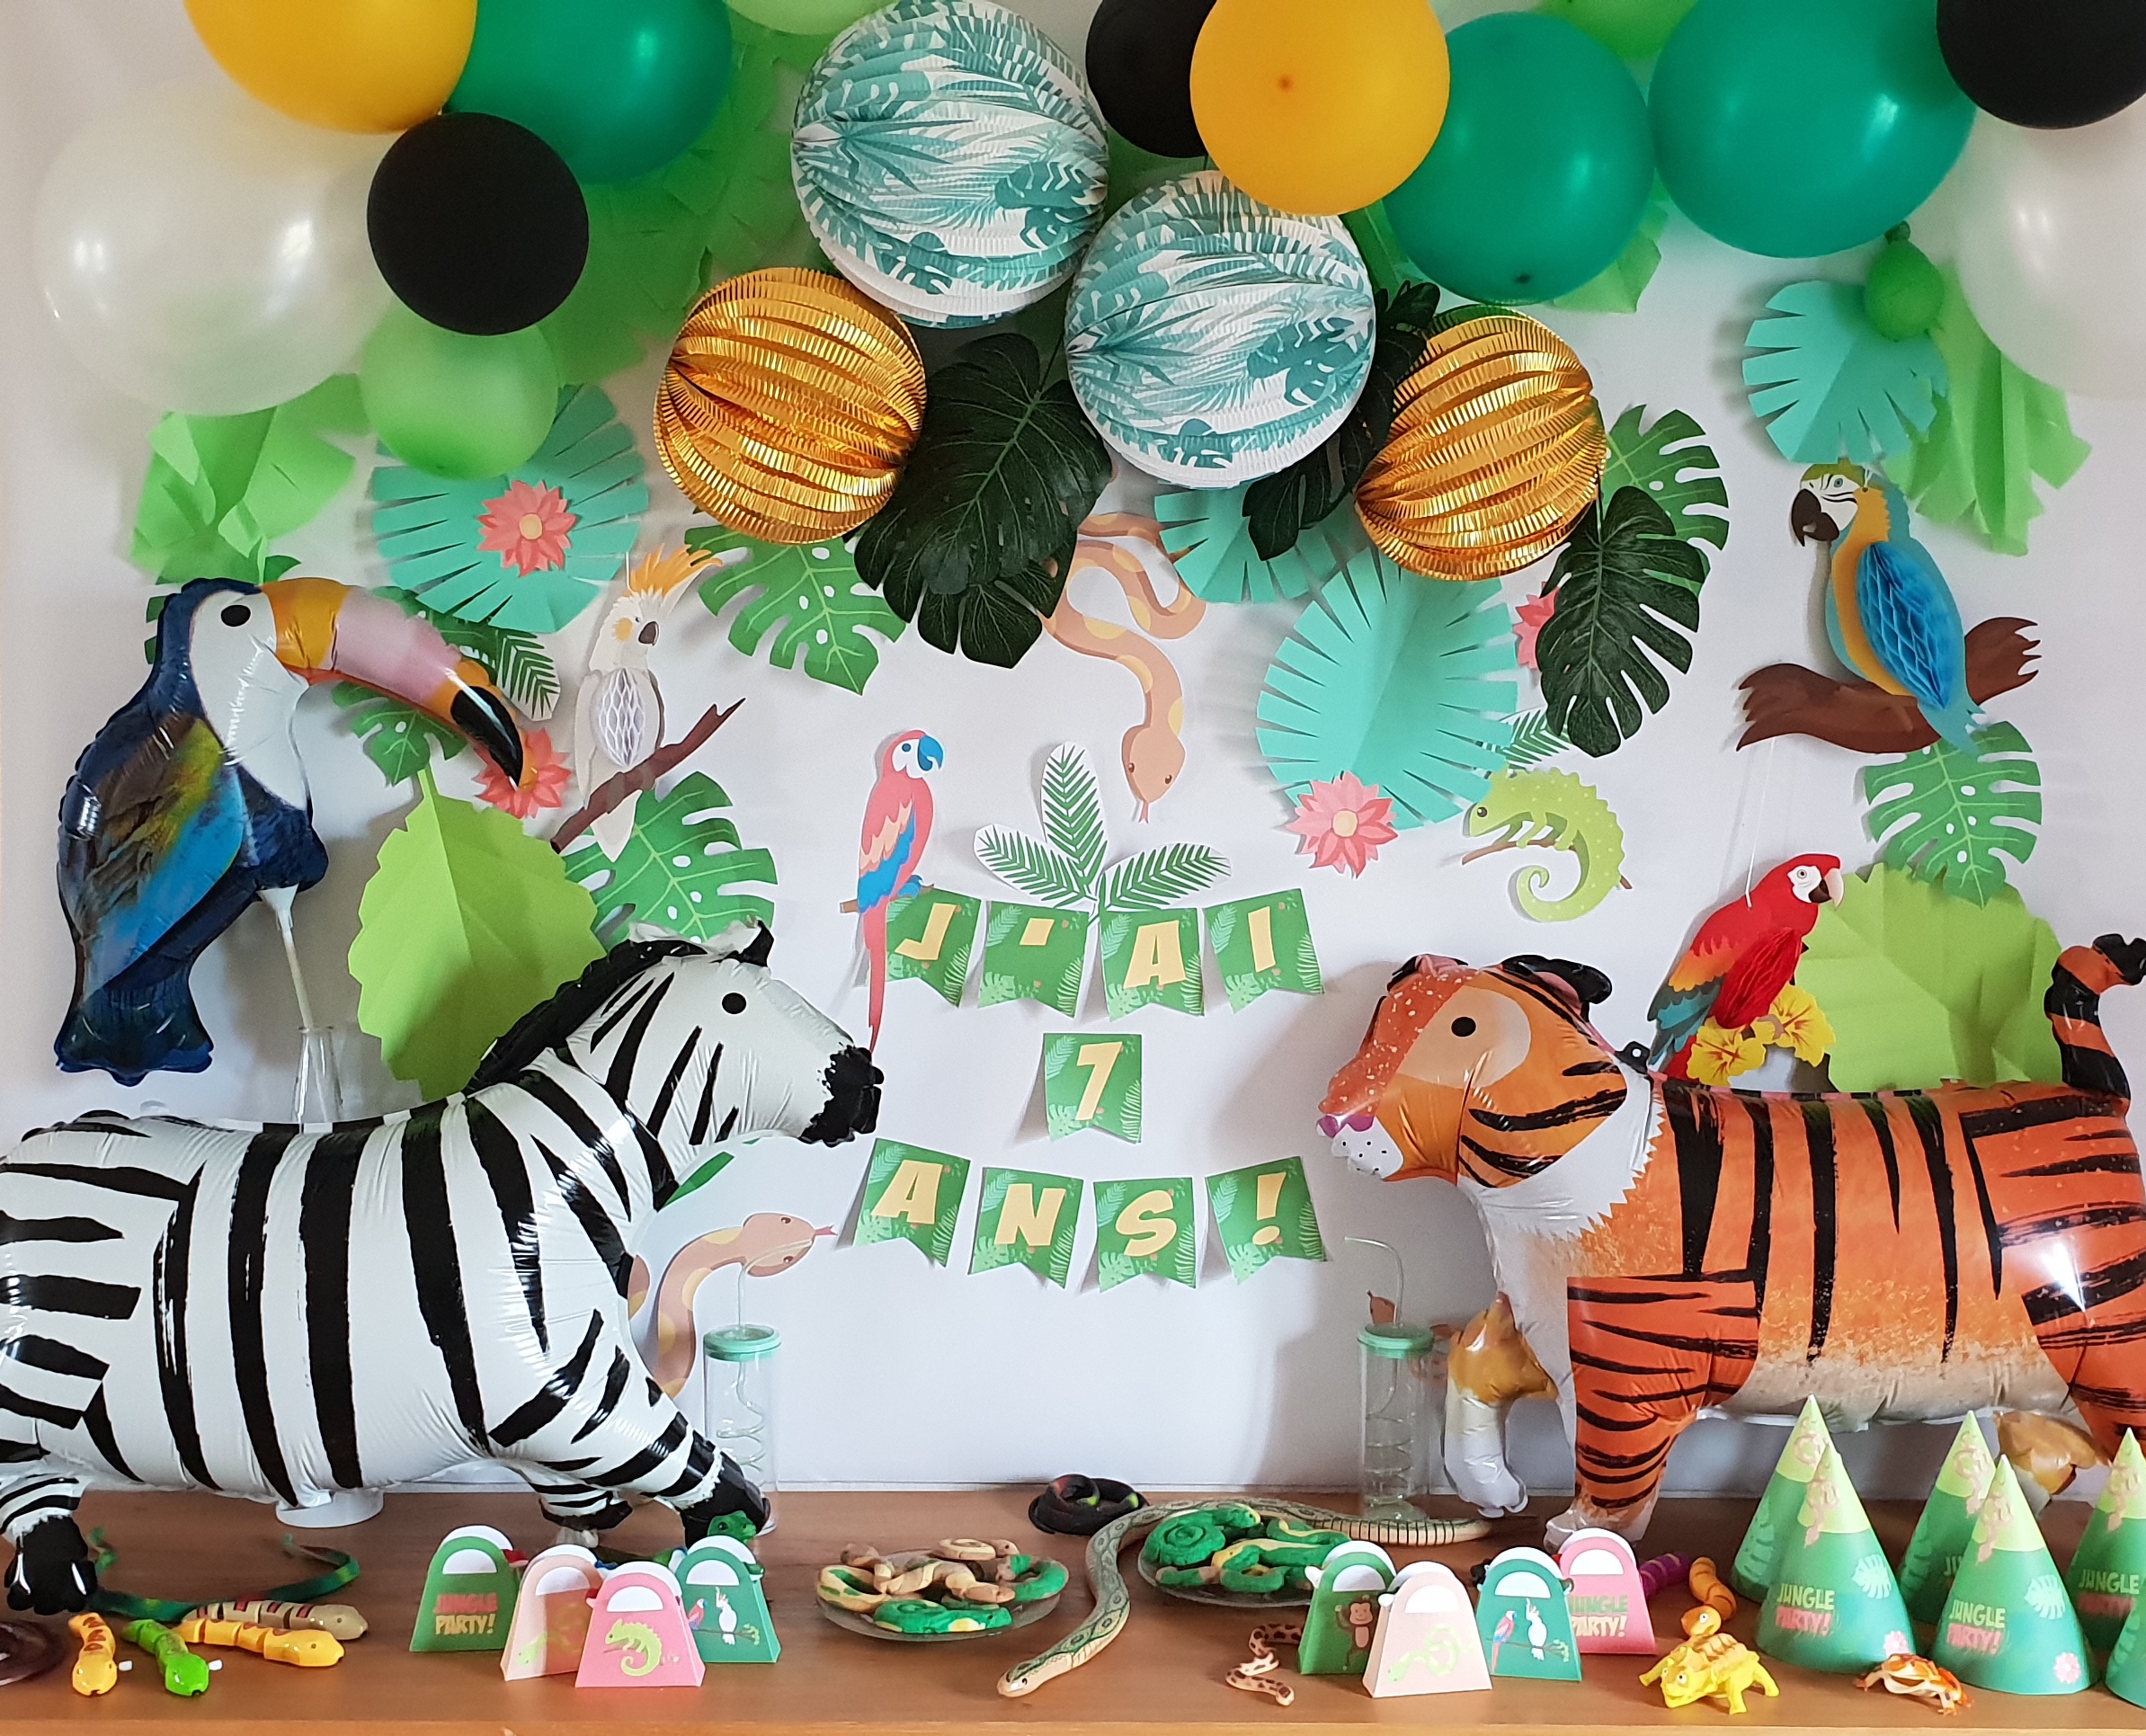 Ballons imprimés pour anniversaire enfant - Annikids